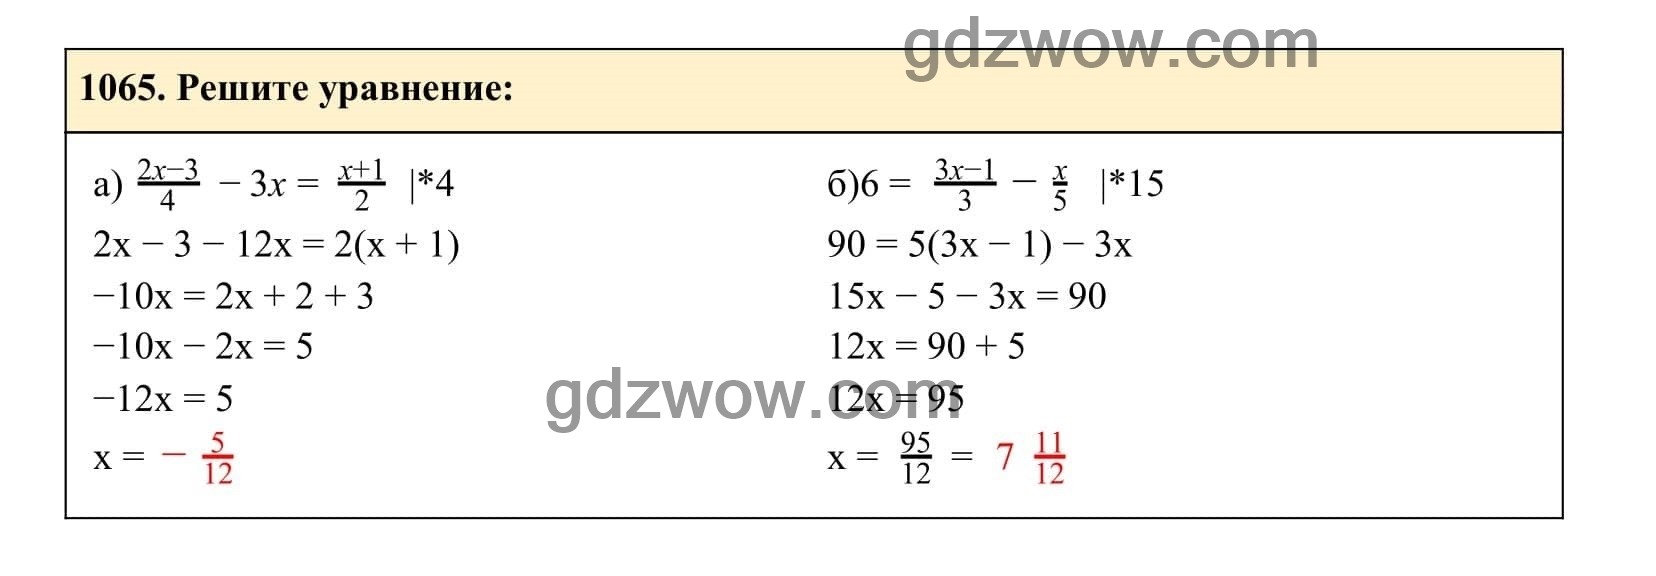 Упражнение 1065 - ГДЗ по Алгебре 7 класс Учебник Макарычев (решебник) - GDZwow